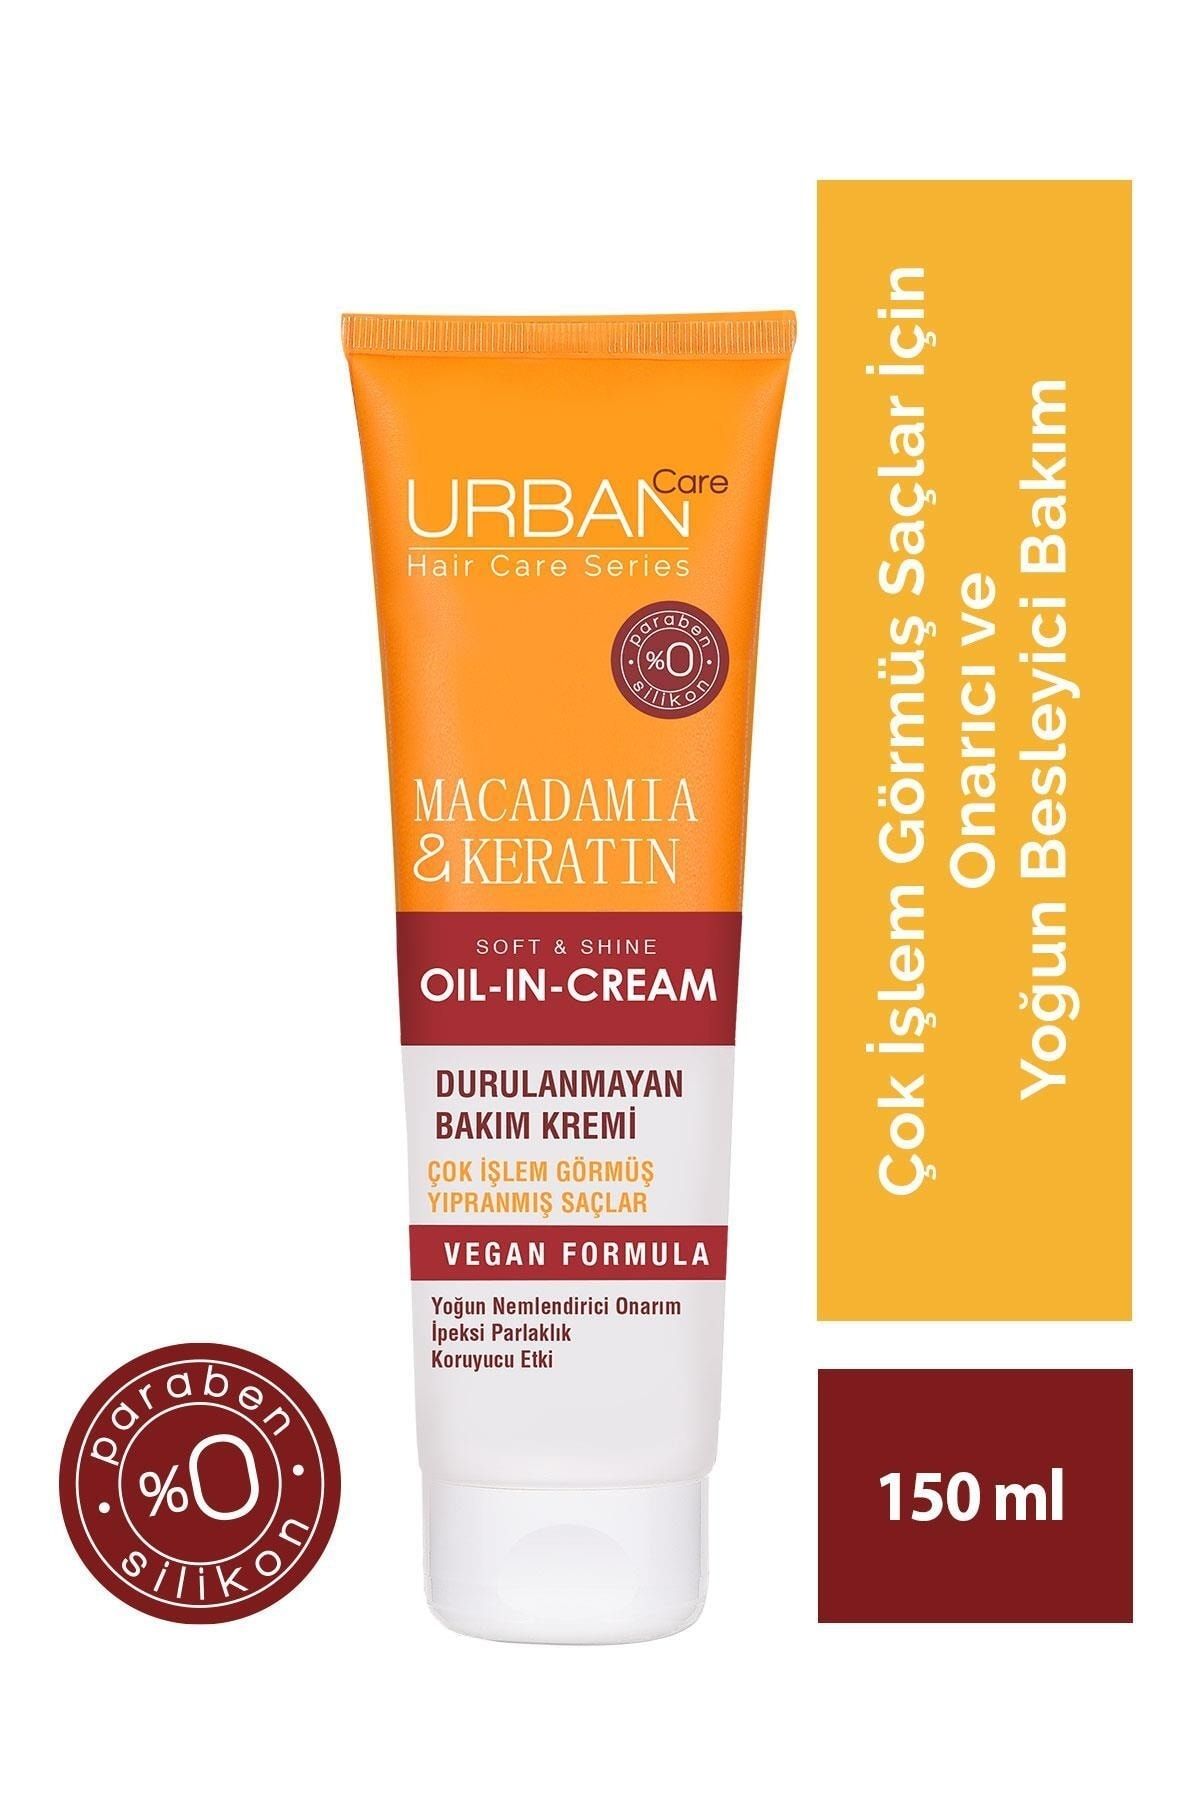 Urban Care Makademya&keratin Çok Işlem Görmüş Saçlara Özel Onarıcı Durulanmayan Saç Kremi-150ml